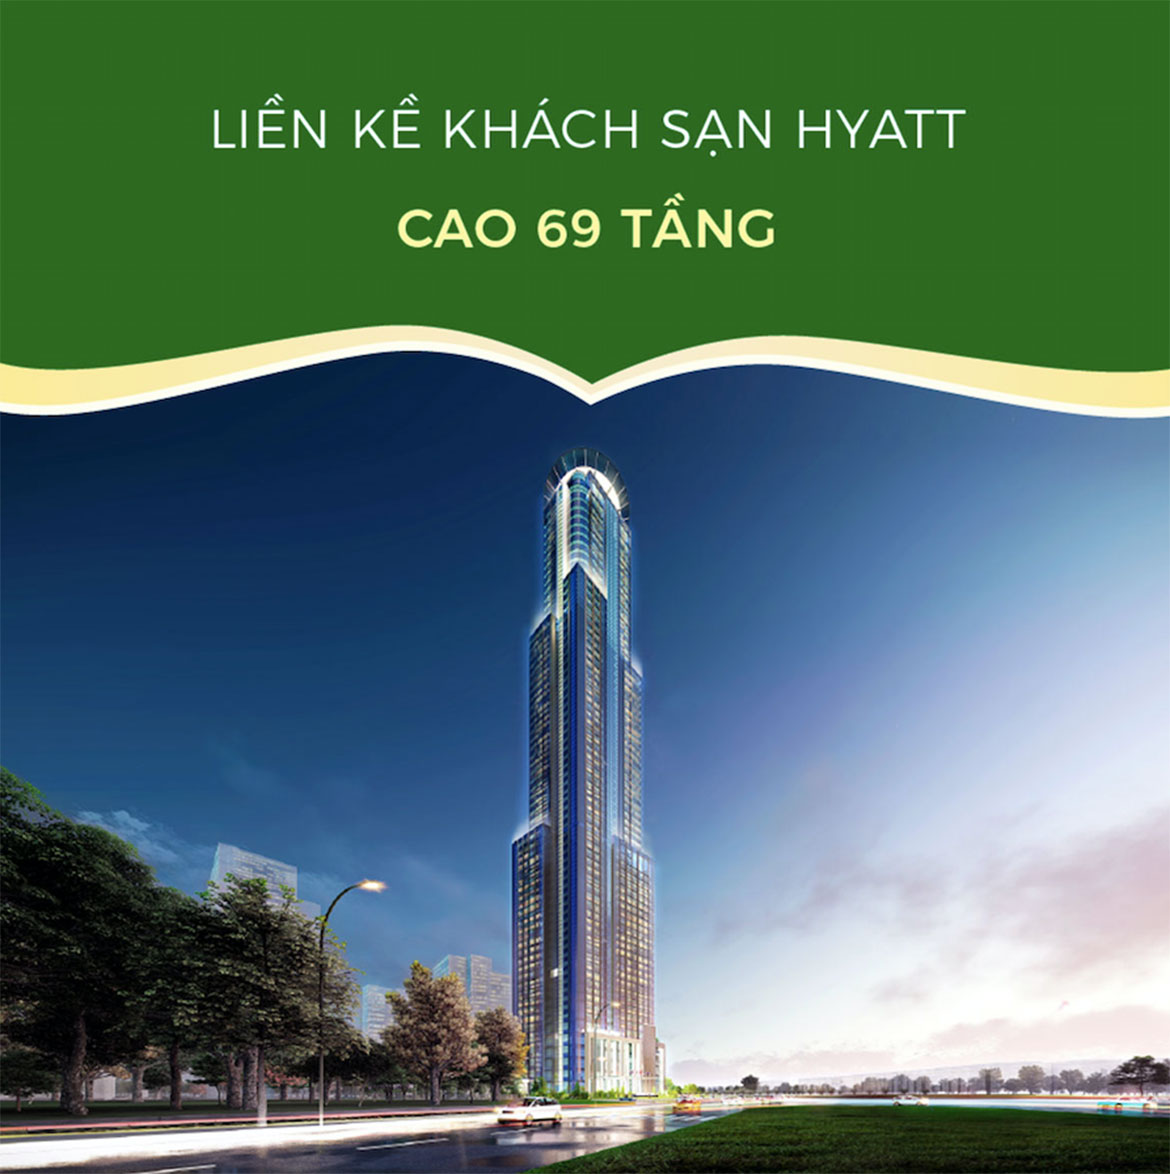 Toà HR3 dễ dàng di chuyển đến khách sạn quốc tế Hyatt Hotels với 69 tầng cao